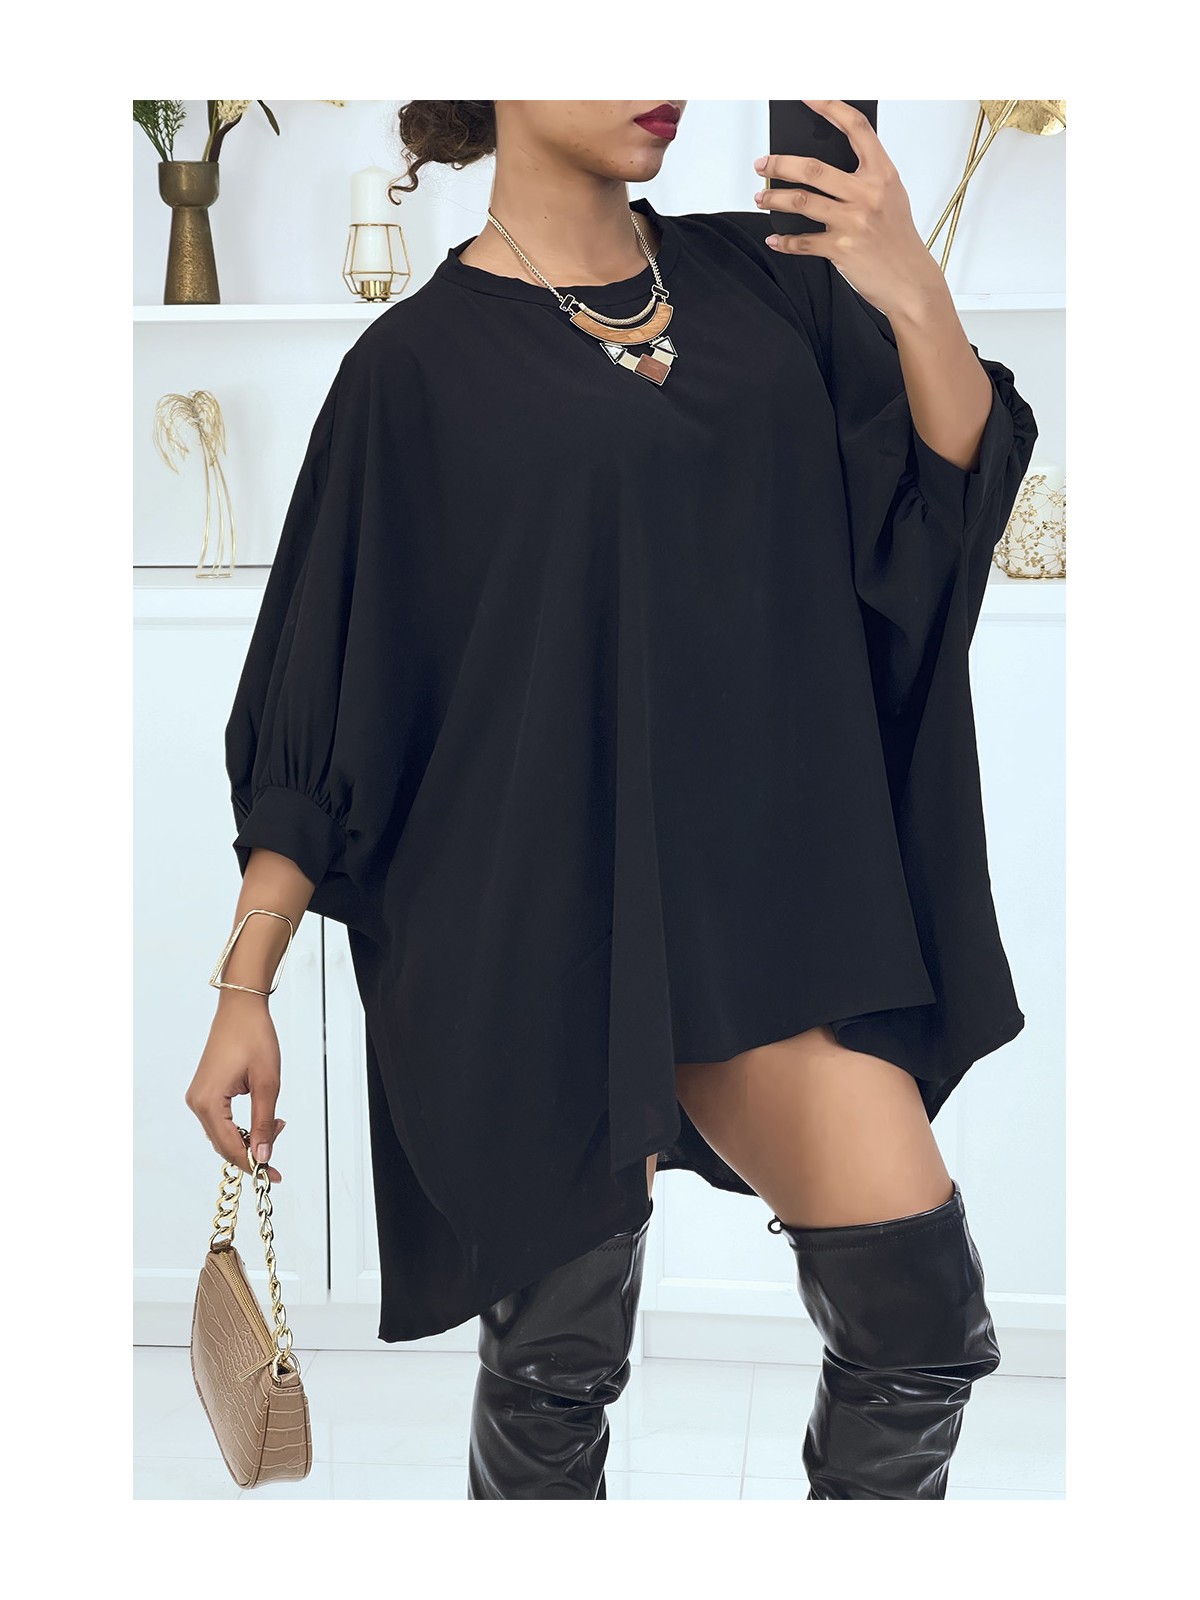 Robe tunique over-size noir très tendance - 1